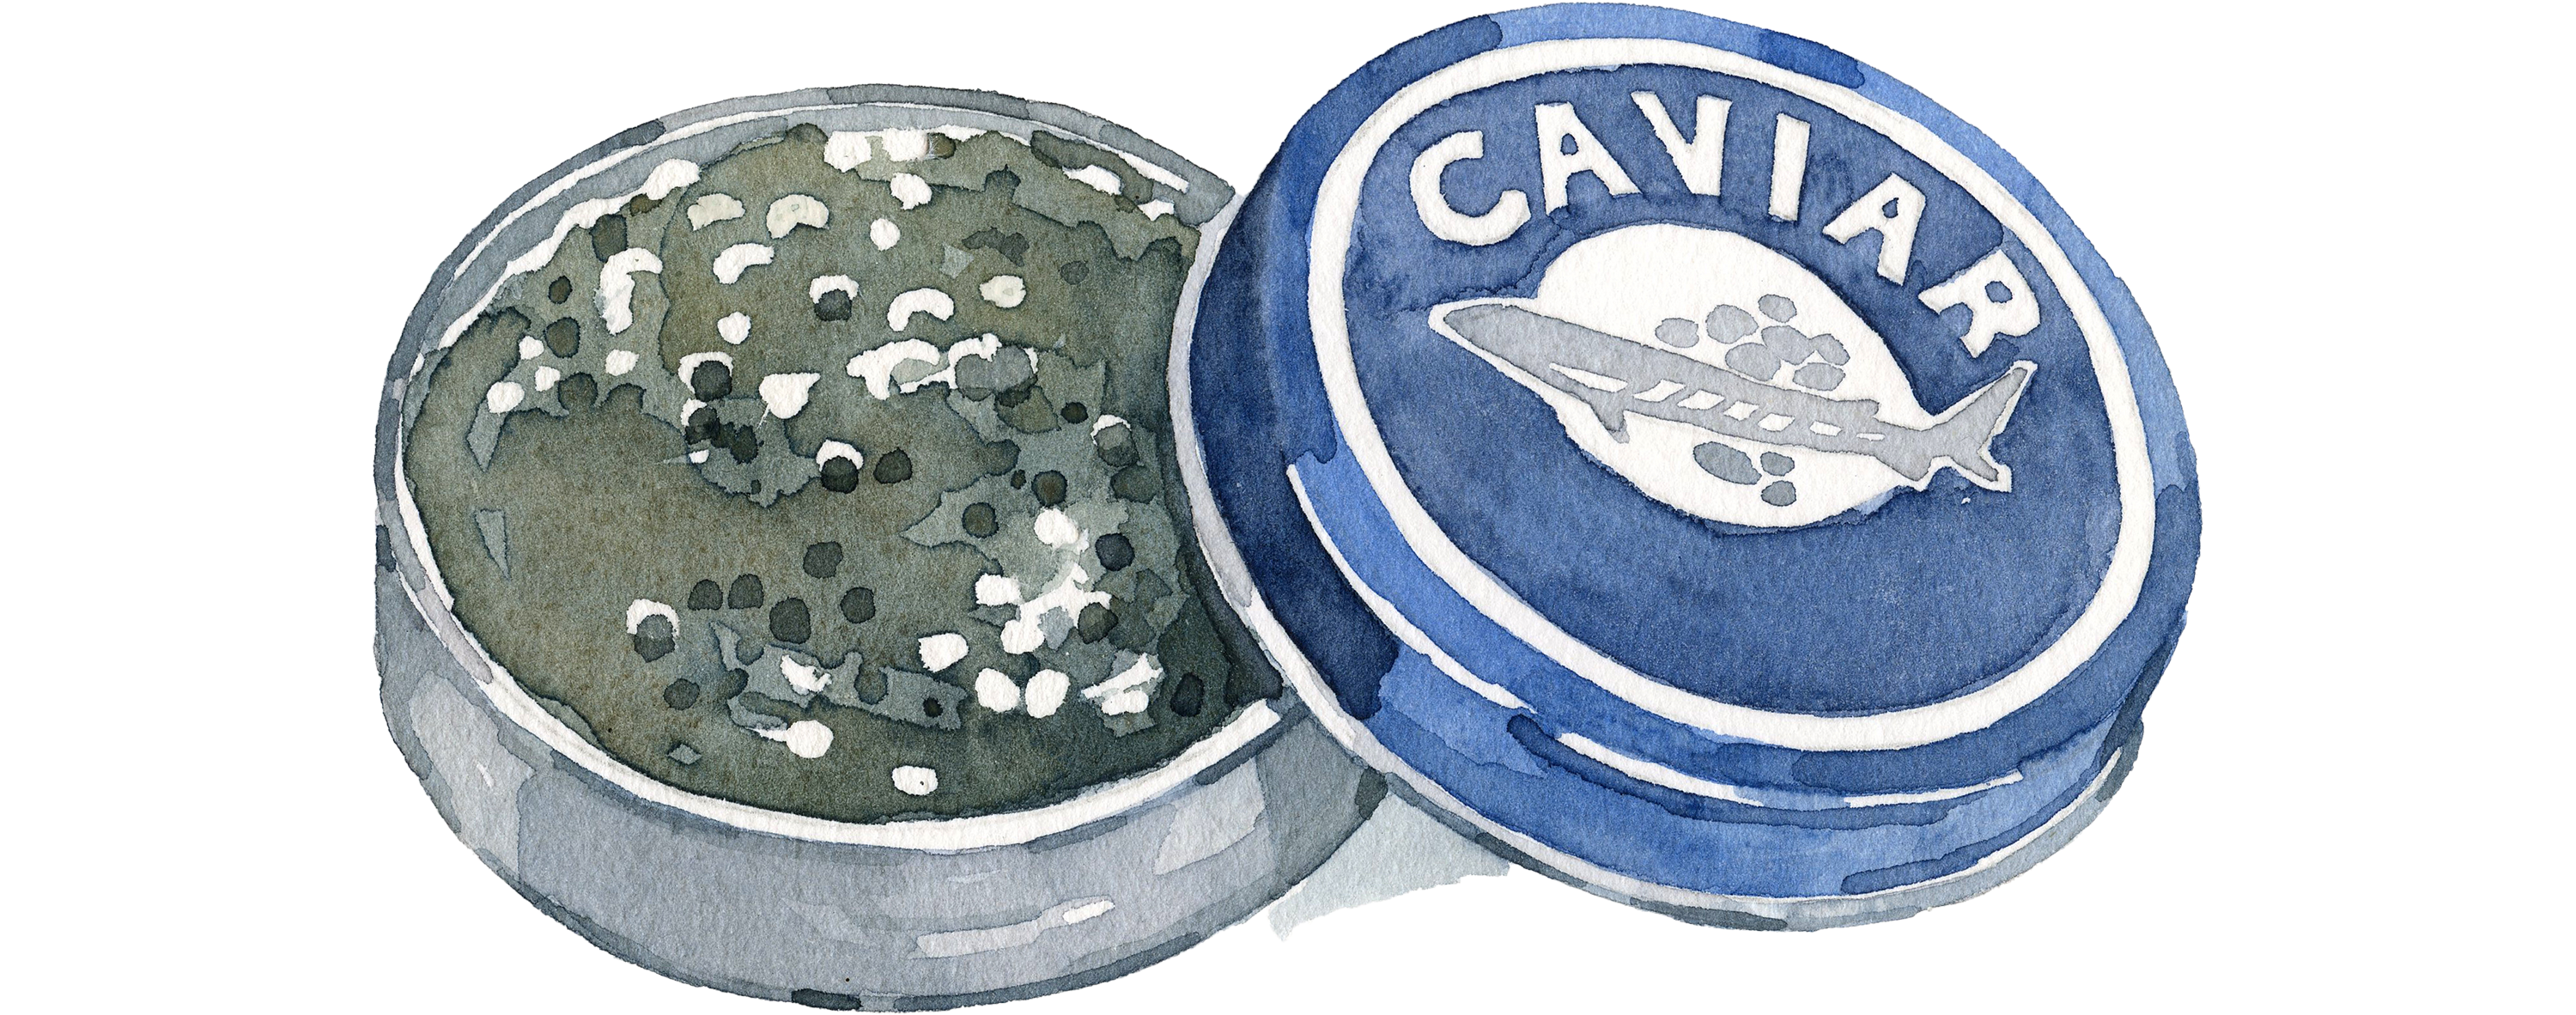 Fischlexikon: Kaviar